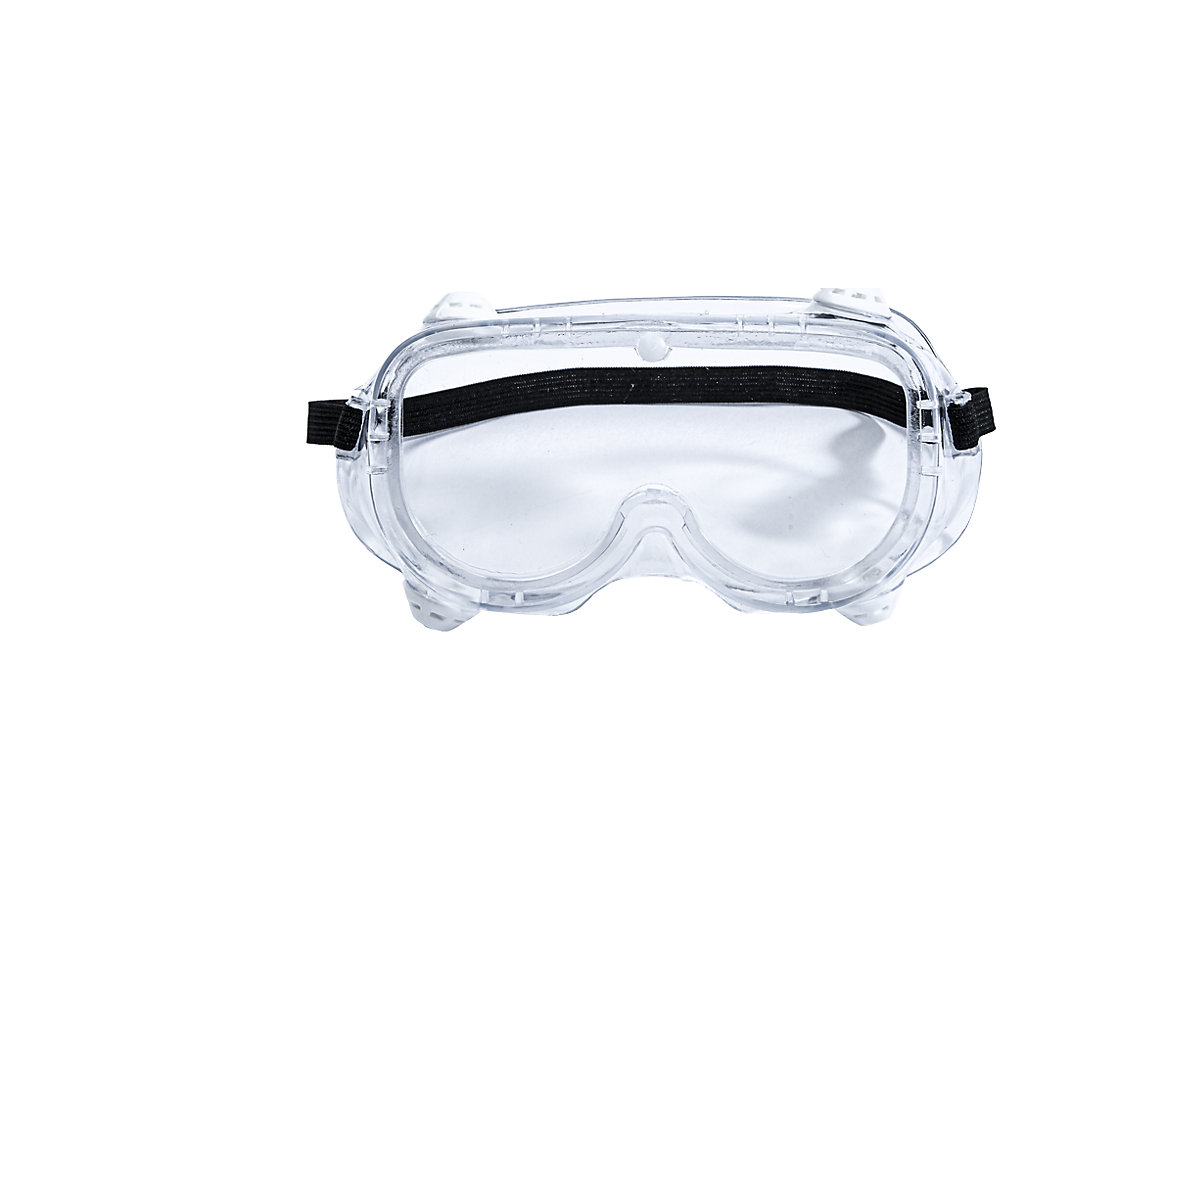 Gafas Proteccion En166 Patillas Ajustables Neutras con Ofertas en Carrefour